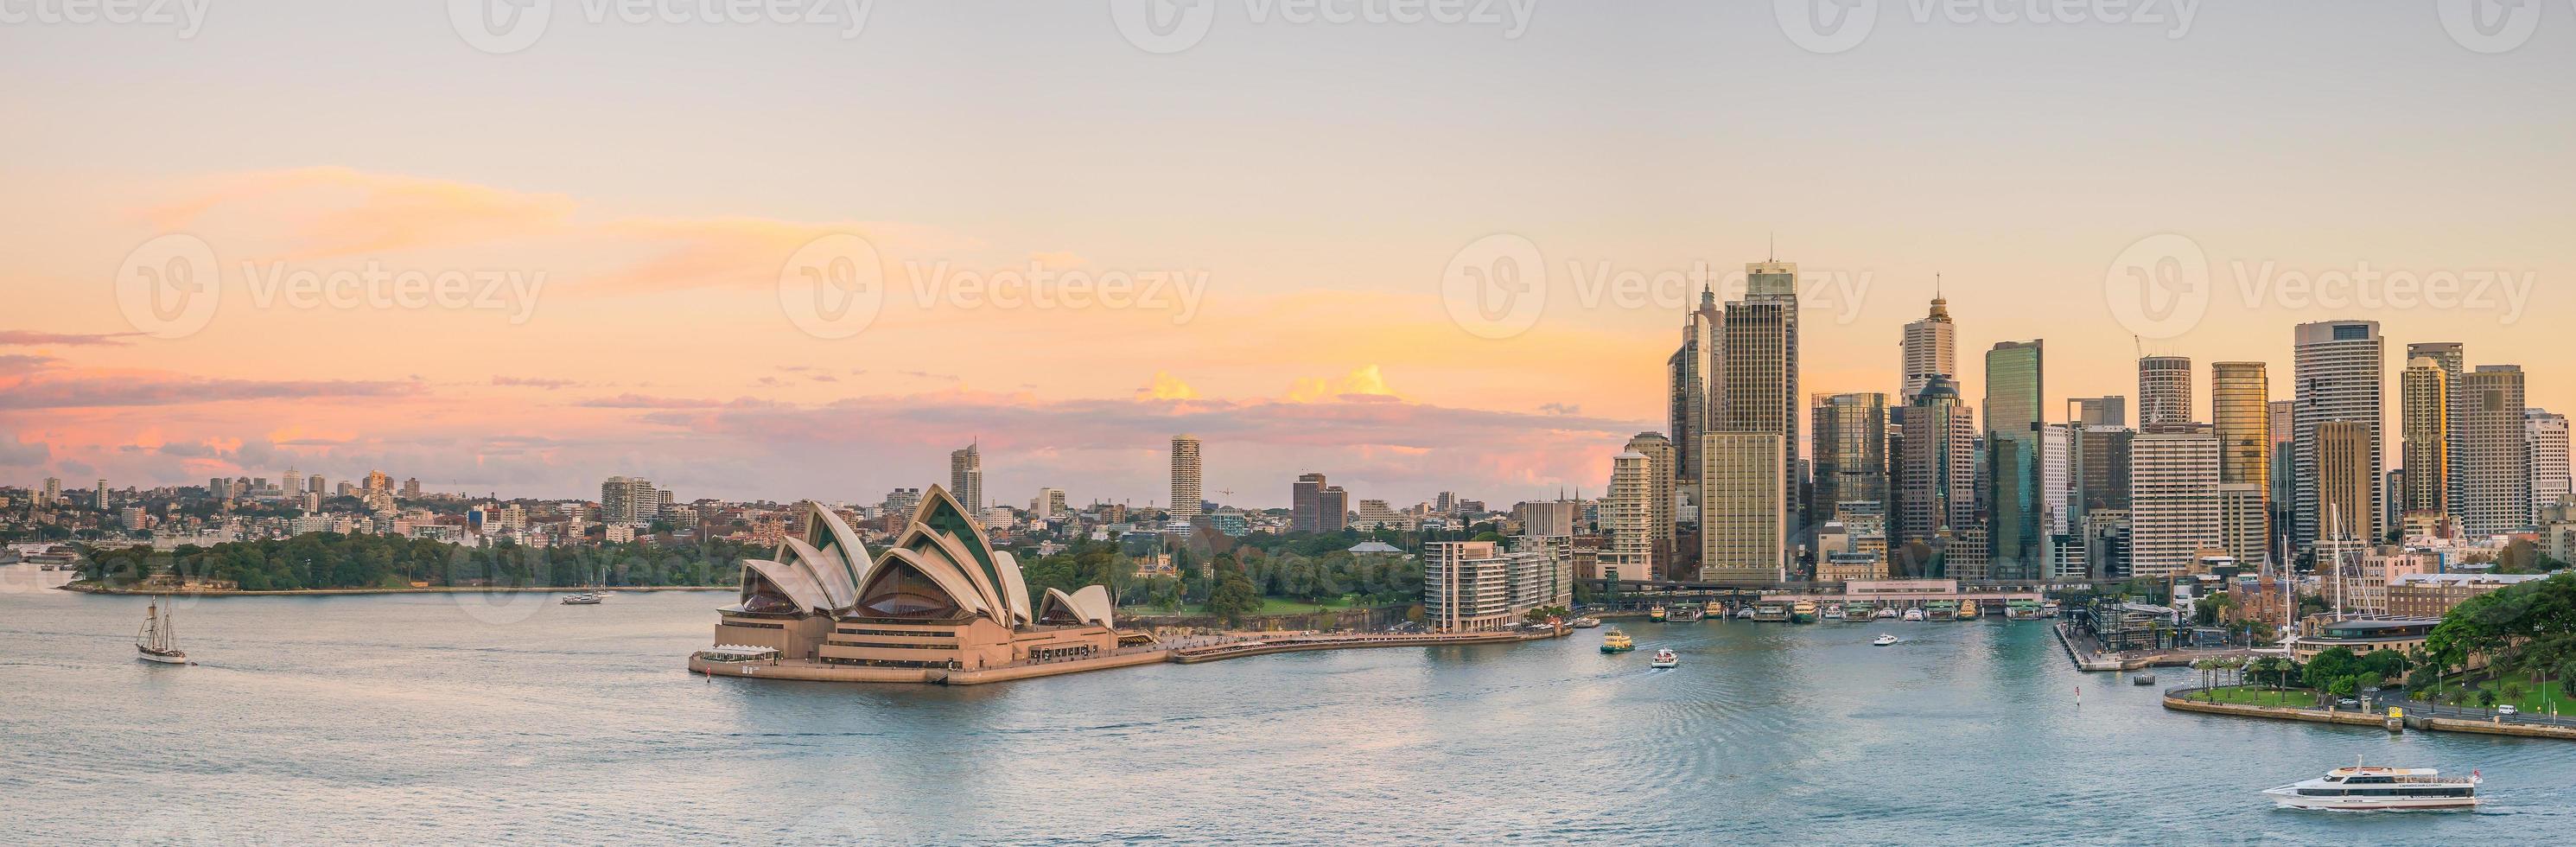 Skyline du centre-ville de Sydney photo